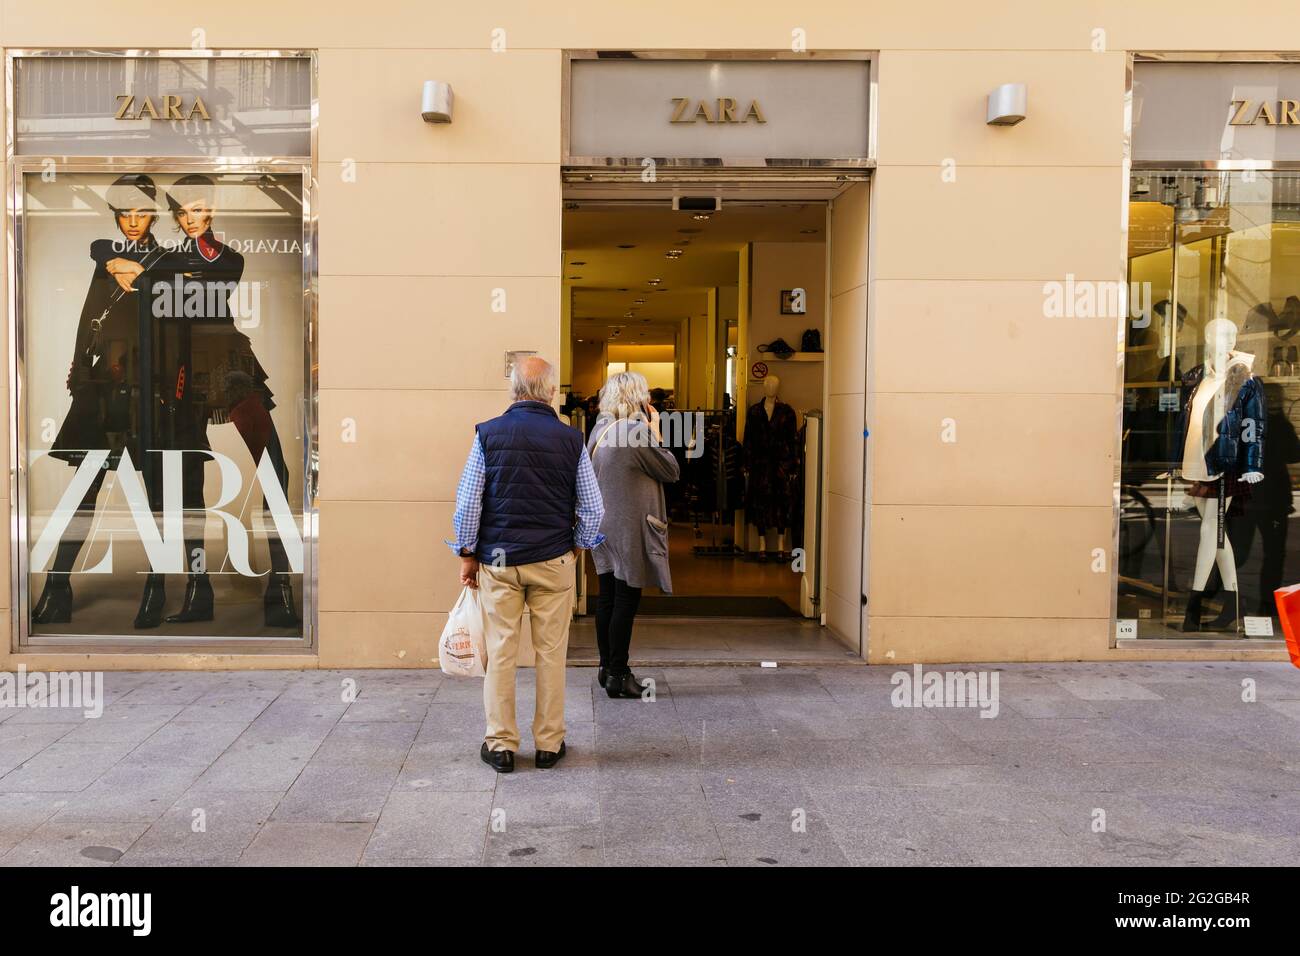 Zara Store. Zara SA, stilisiert als ZARA, ist ein spanischer  Bekleidungshändler mit Sitz in Artexo, A Coruña, in Galicien, Spanien. Das  Unternehmen ist spezialisiert auf schnelle fa Stockfotografie - Alamy